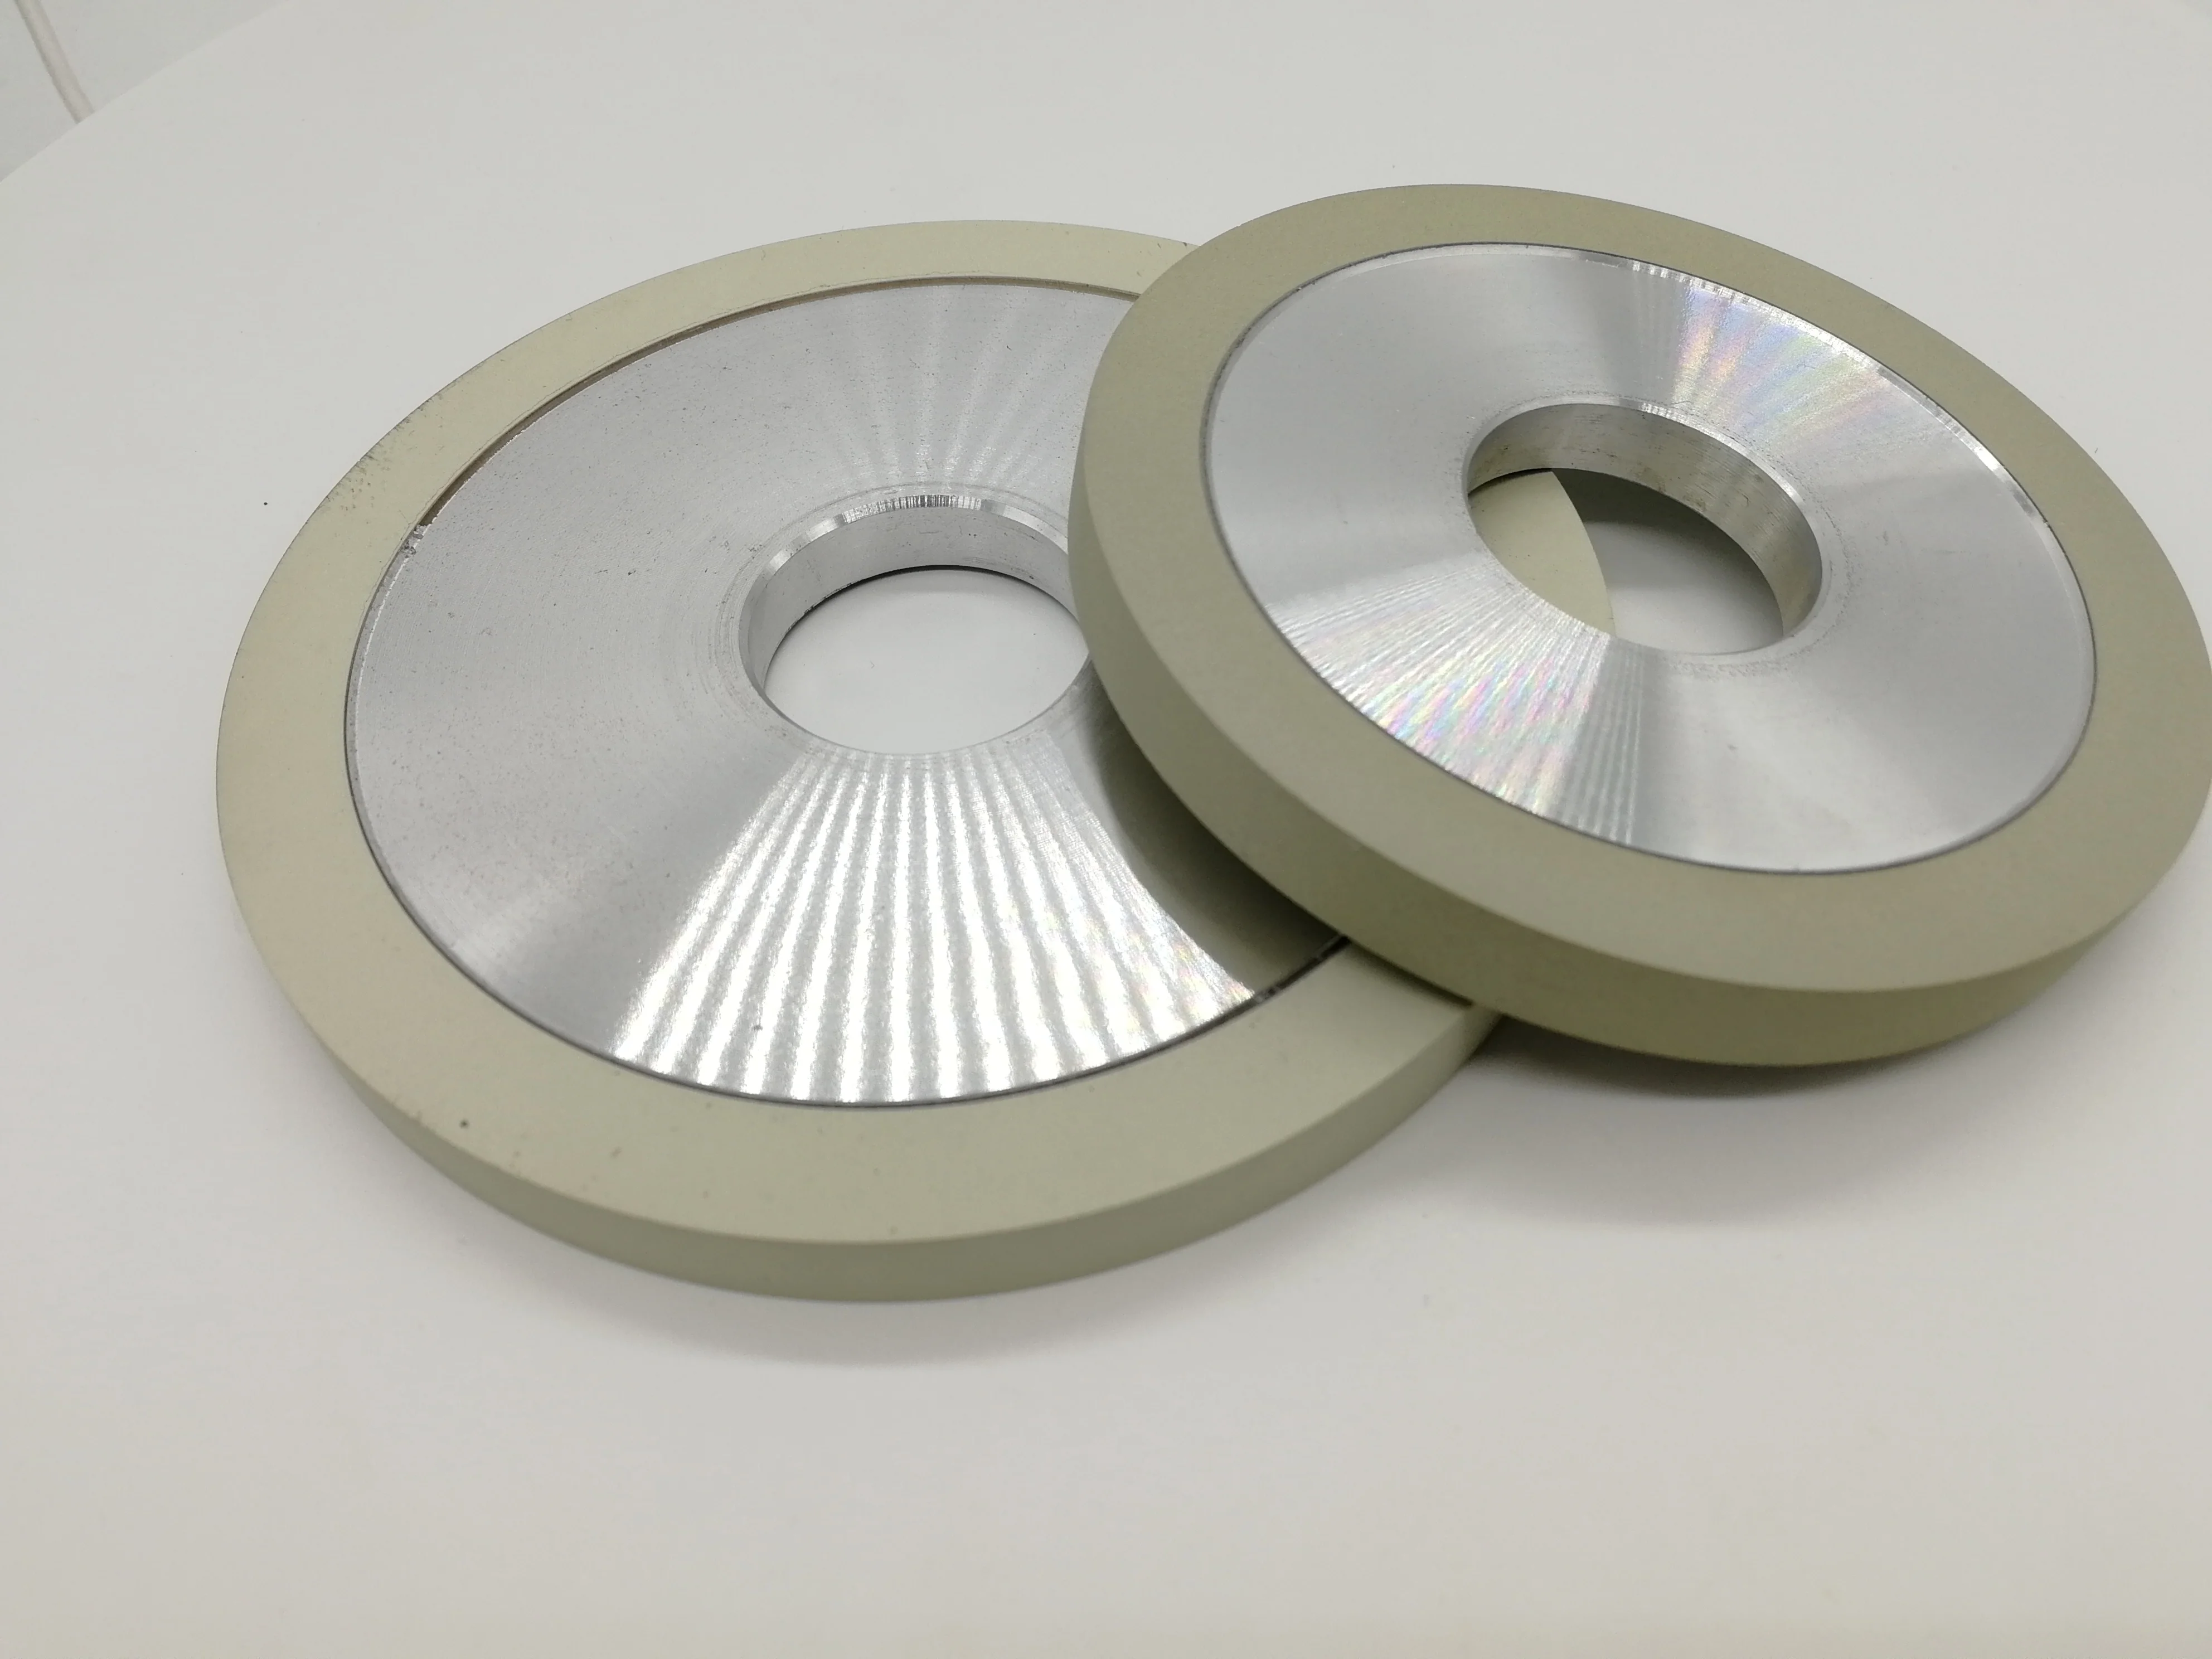 Параллельный алмазный шлифовальный круг для шлифования лезвие PCD и алмазной плакированной пластины от AliExpress RU&CIS NEW